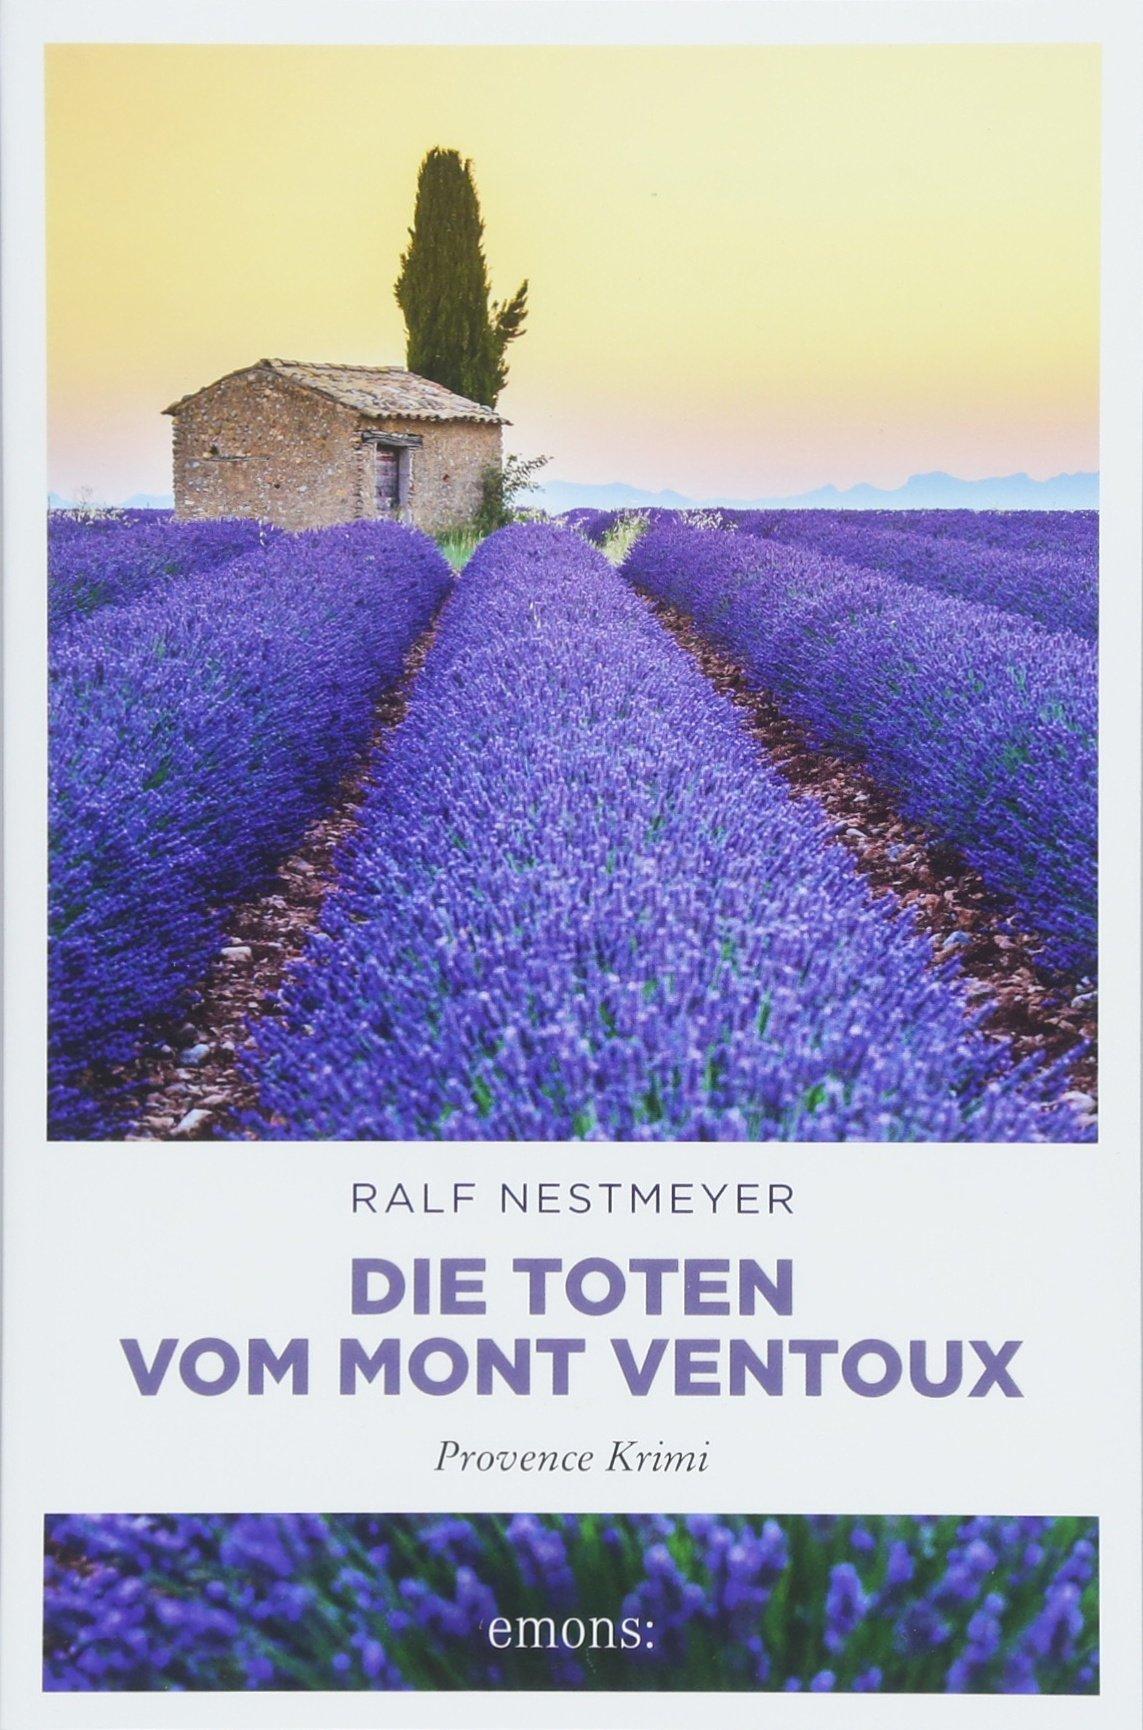 Ralf Nestmeyer, Die Toten vom Mont Ventoux